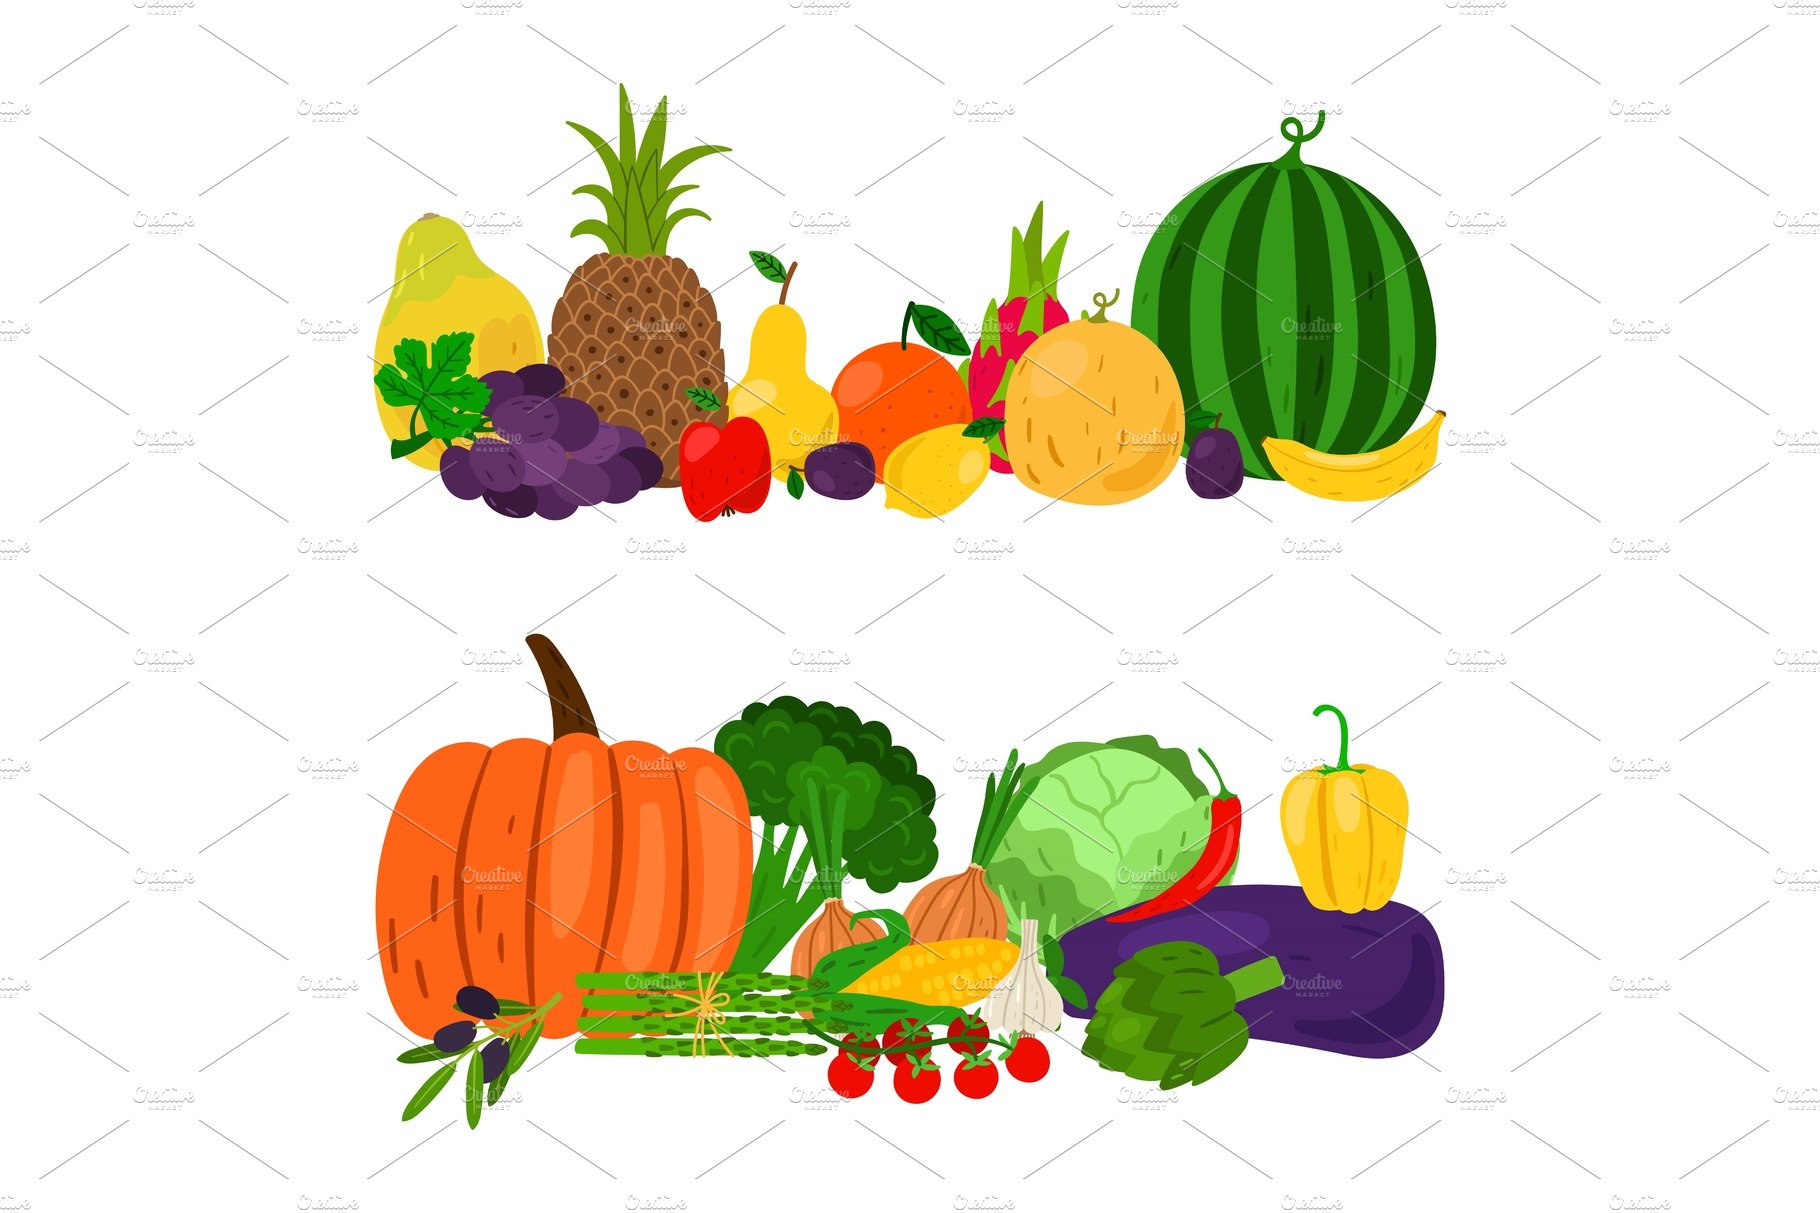 Vegetables fruits set cover image.